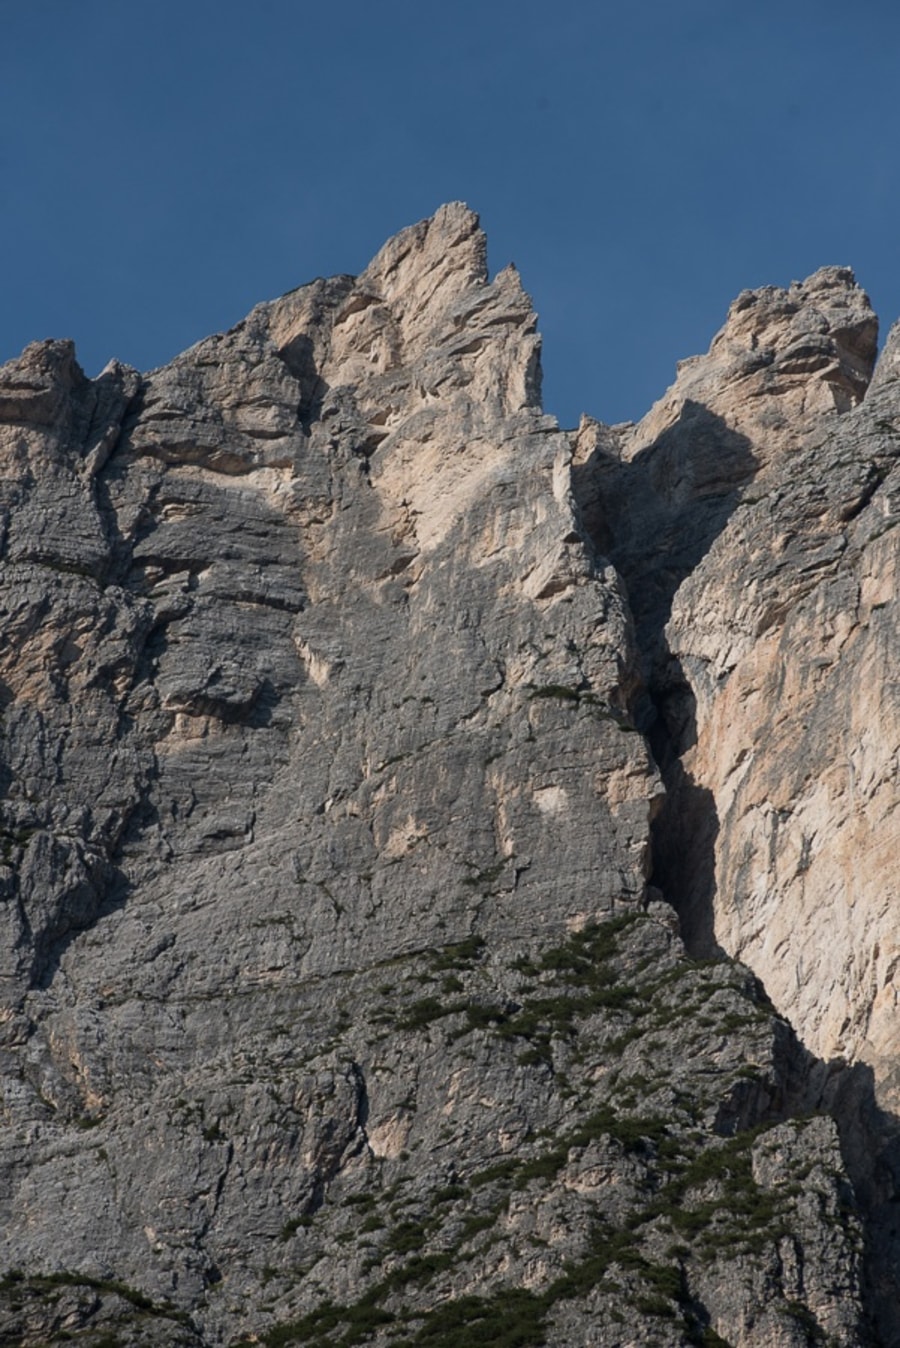 Klettertour "Jori" auf die Punta Fiames in den Dolomiten